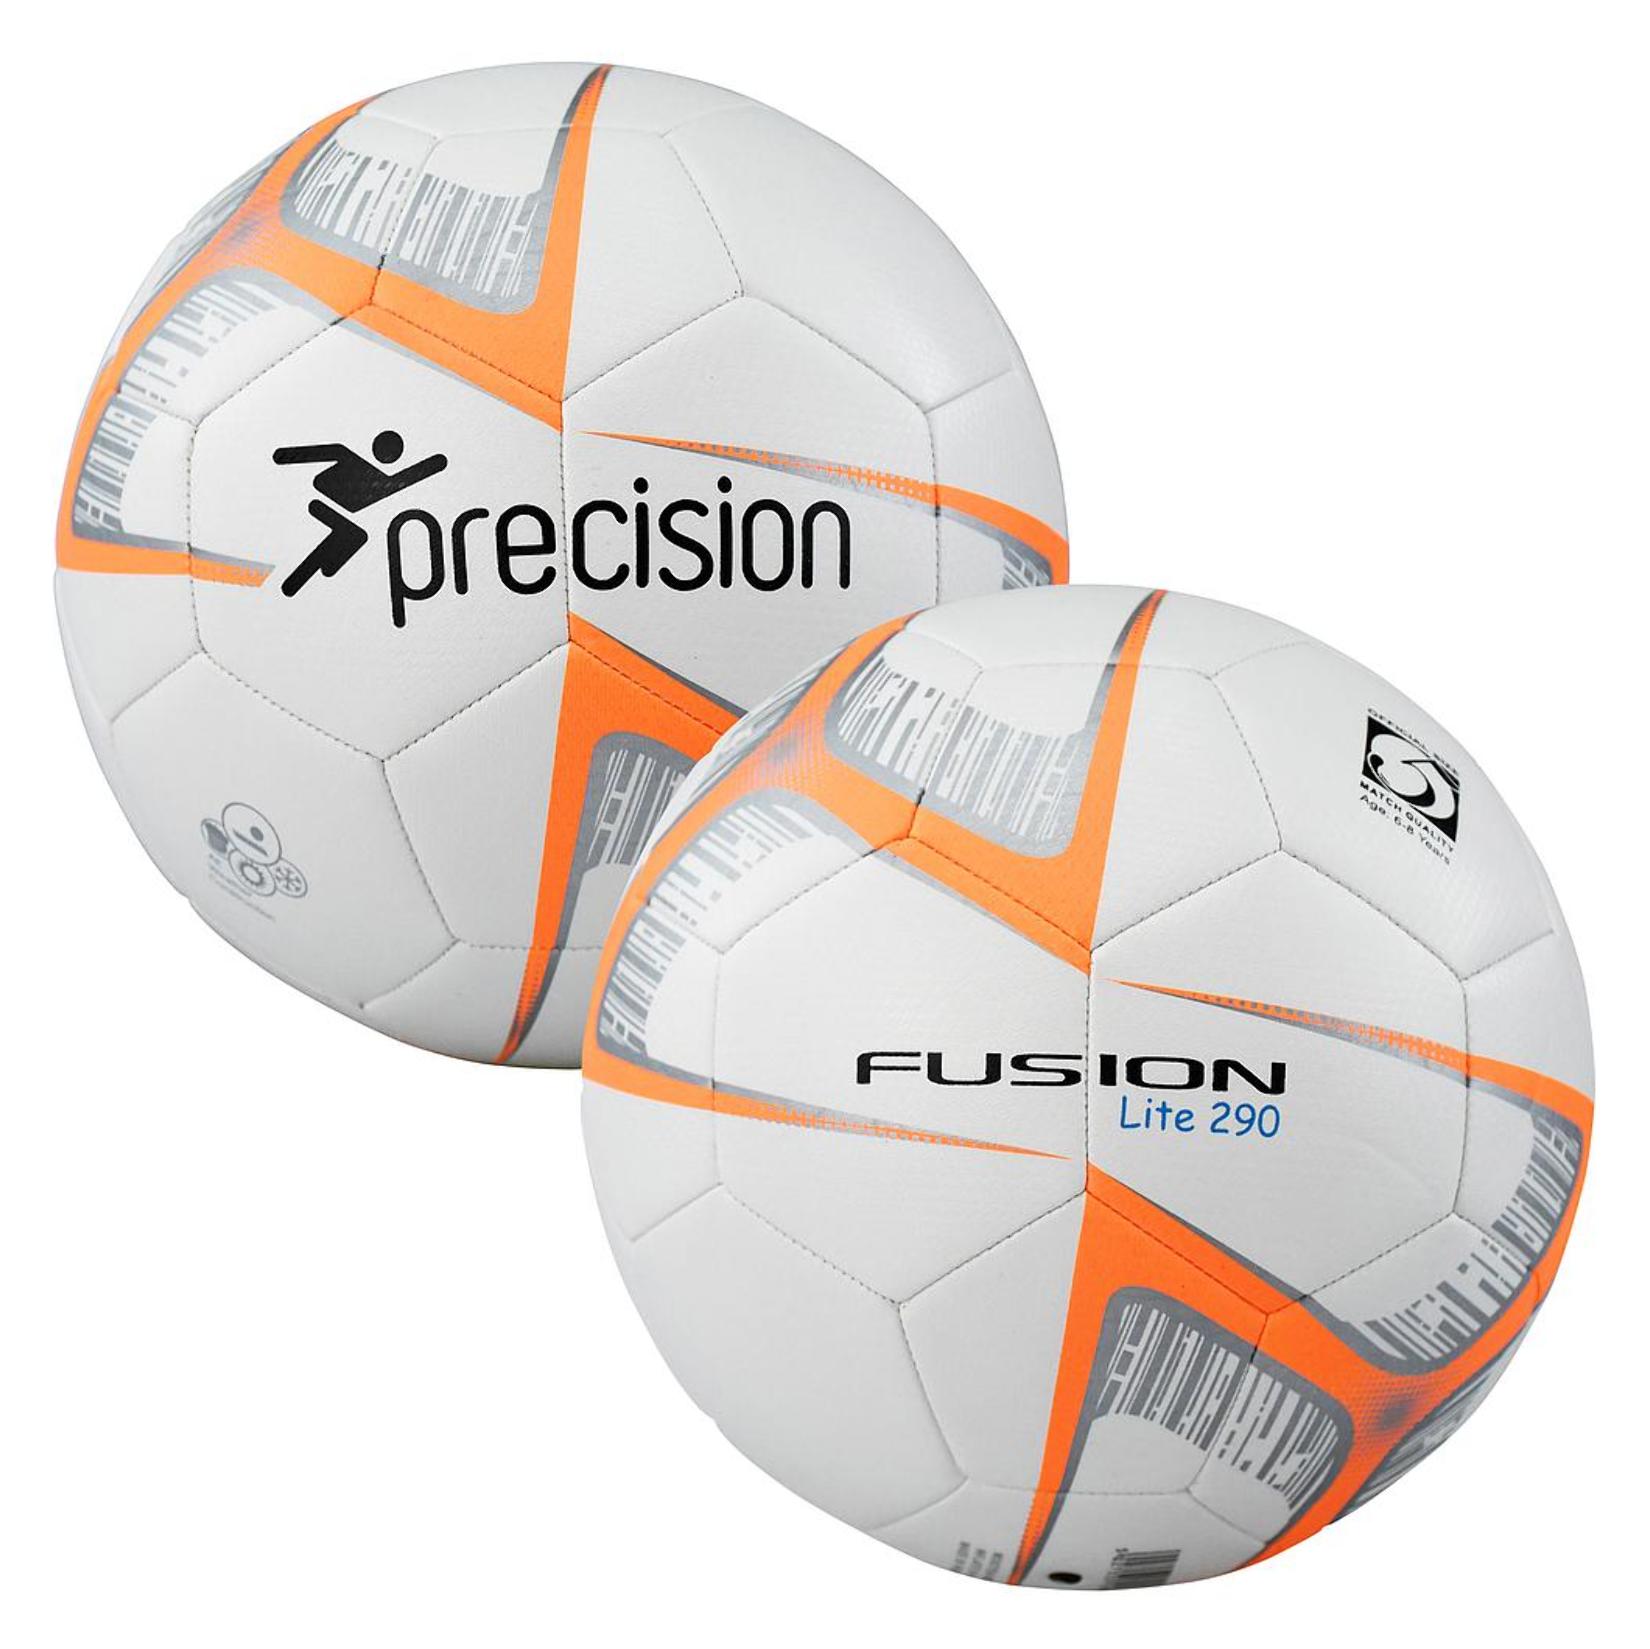 Precision Fusion Lite Football Size 5 290gms